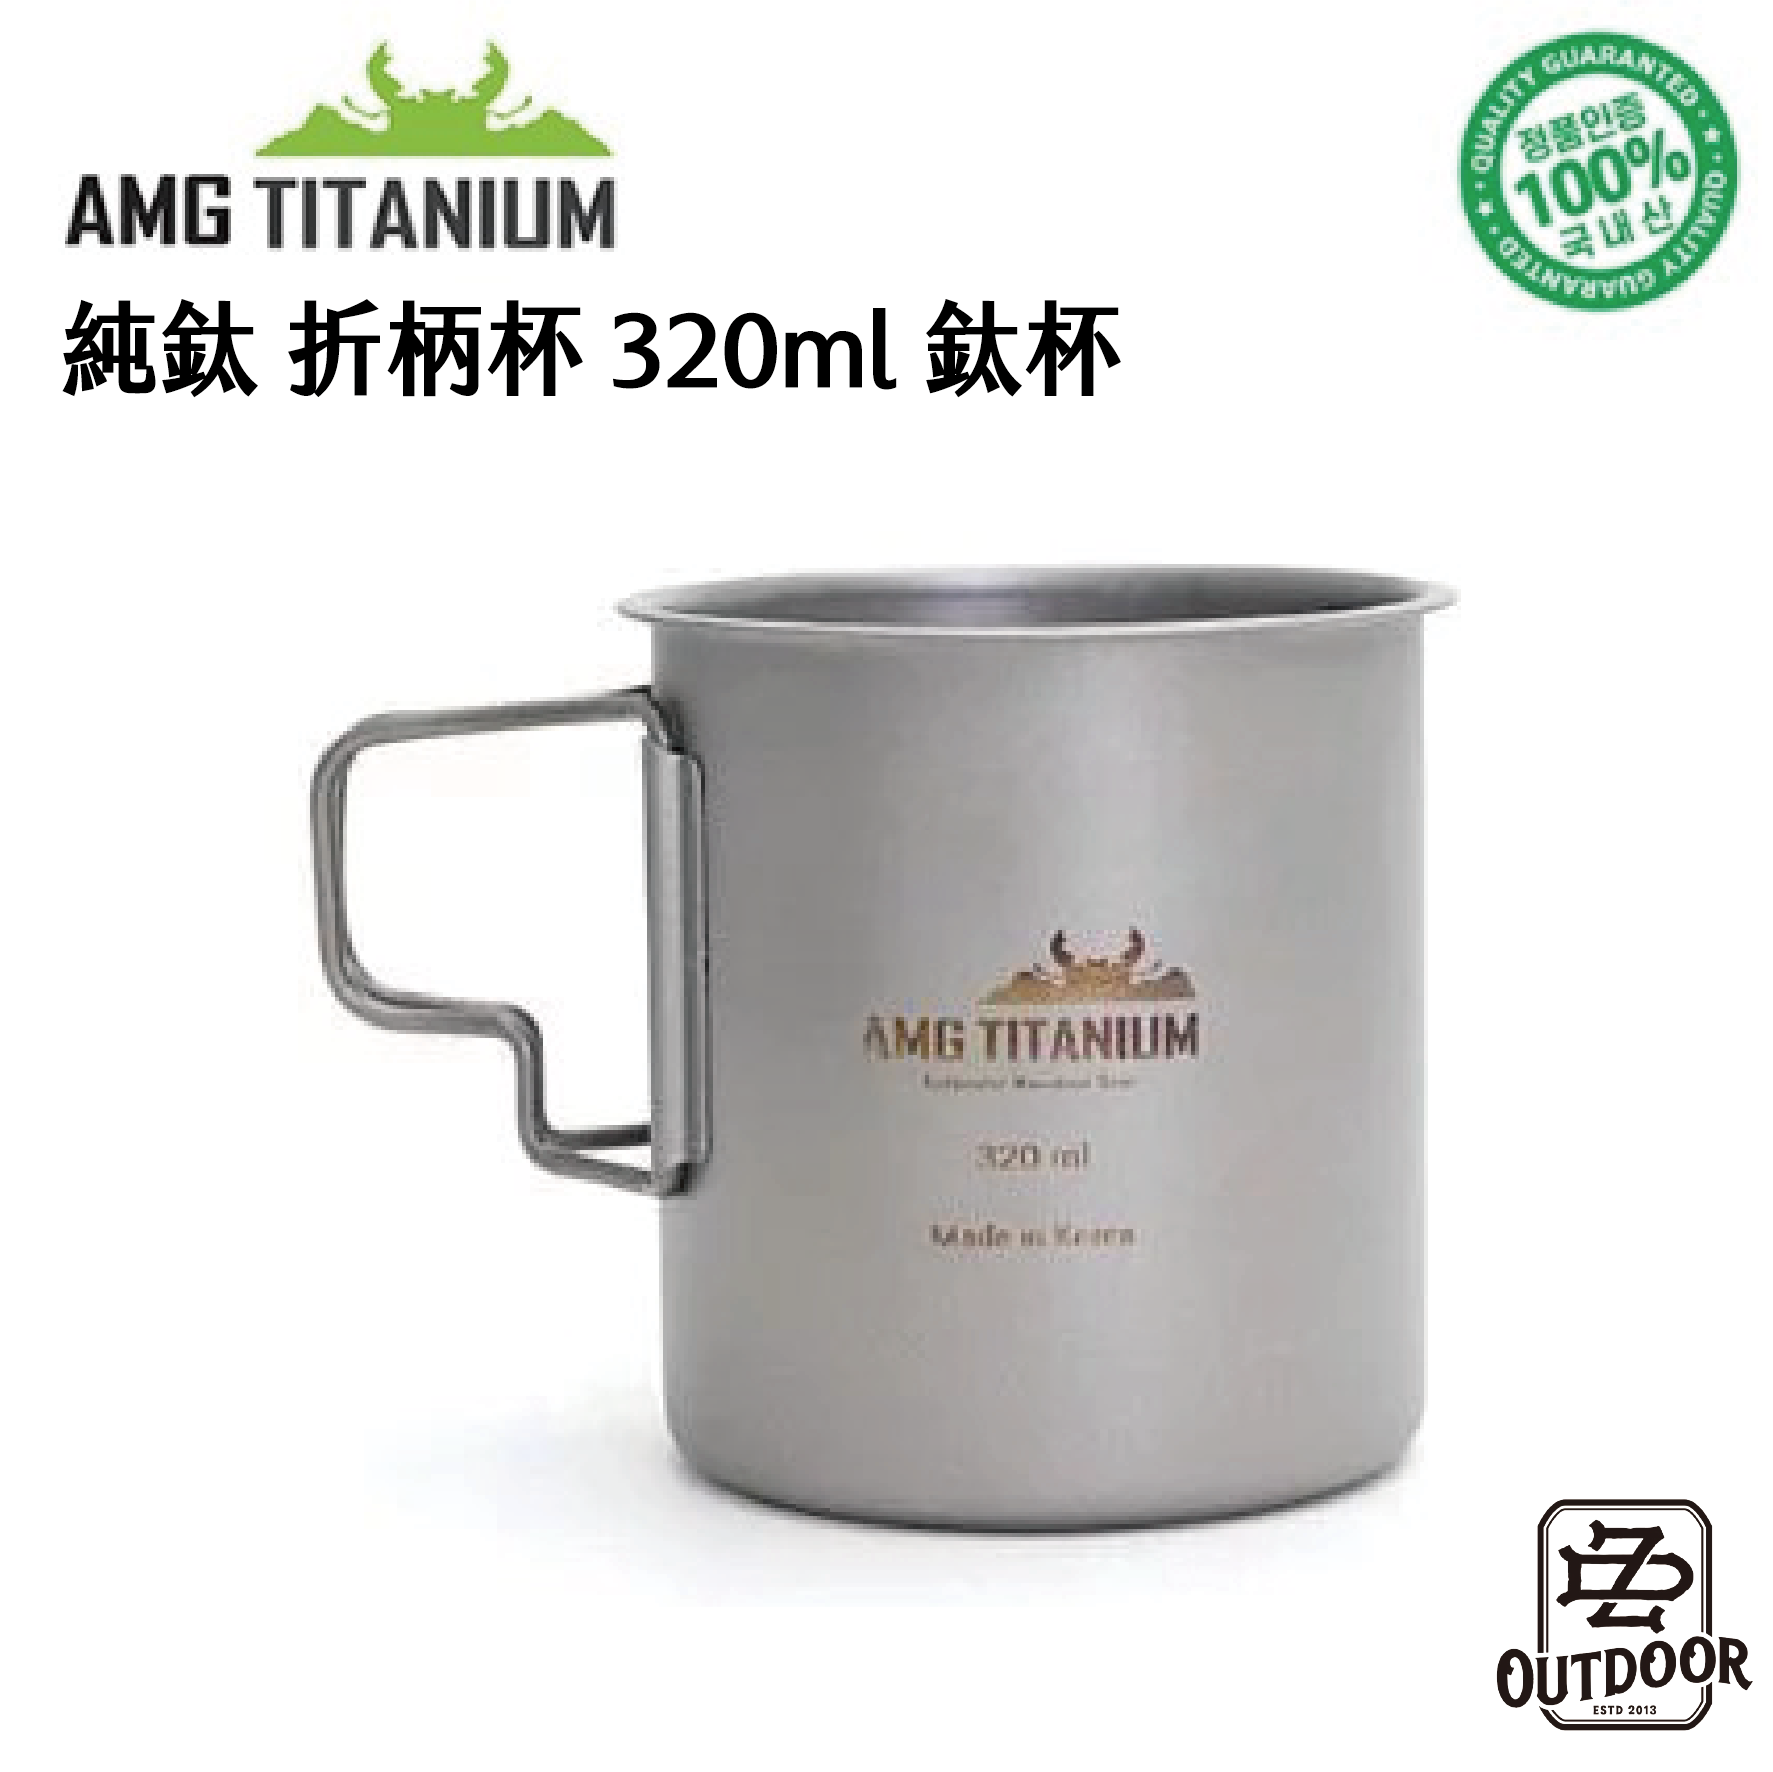 AMG Titanium 韓國 純鈦 折柄杯 320ml【ZD】鈦杯 輕量 戶外 登山 野營 露營 炊具 餐具